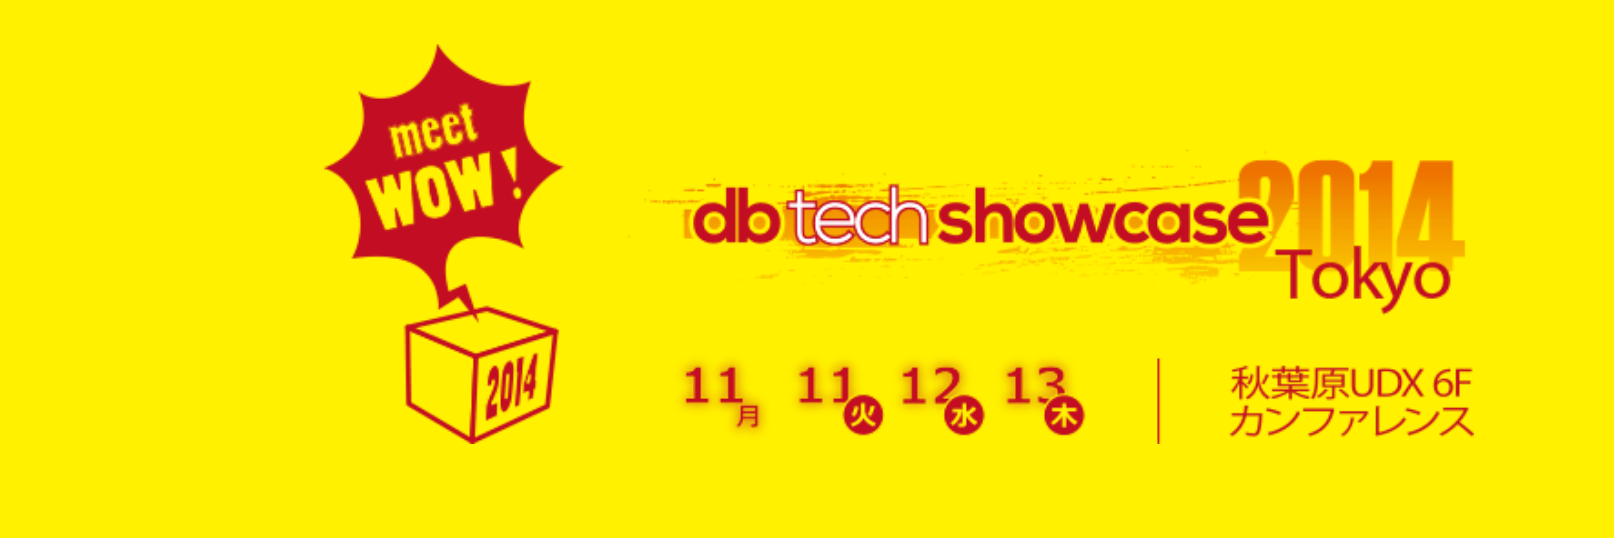 db tech showcase Tokyo 2014